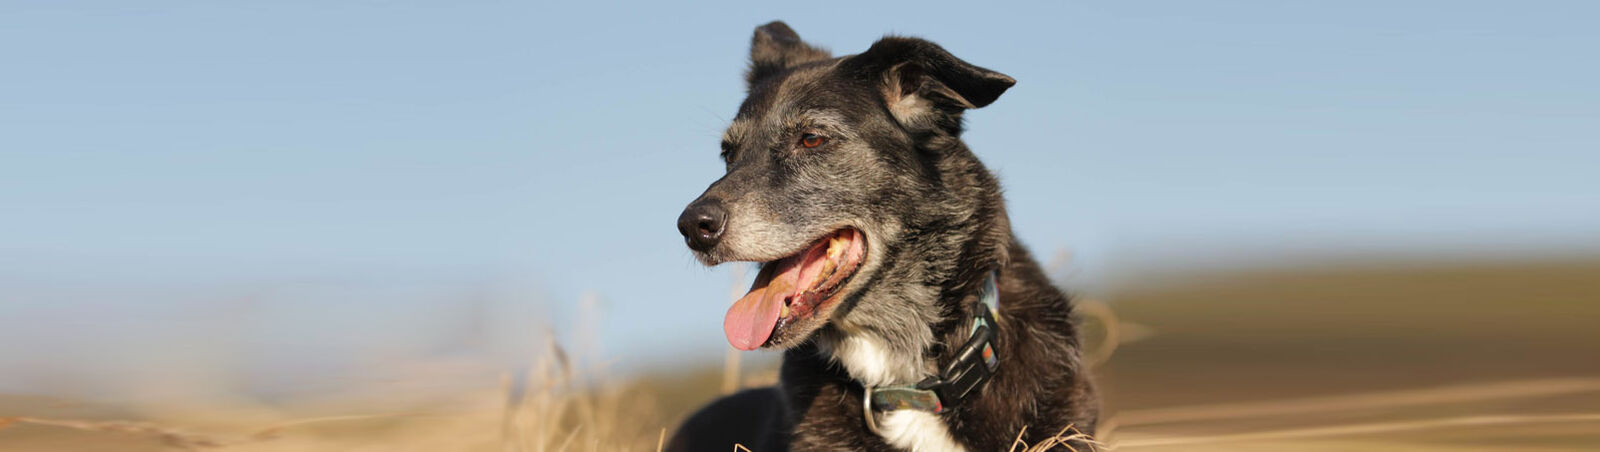 Großer alter dunkler Hund mit graumeliertem Fell.